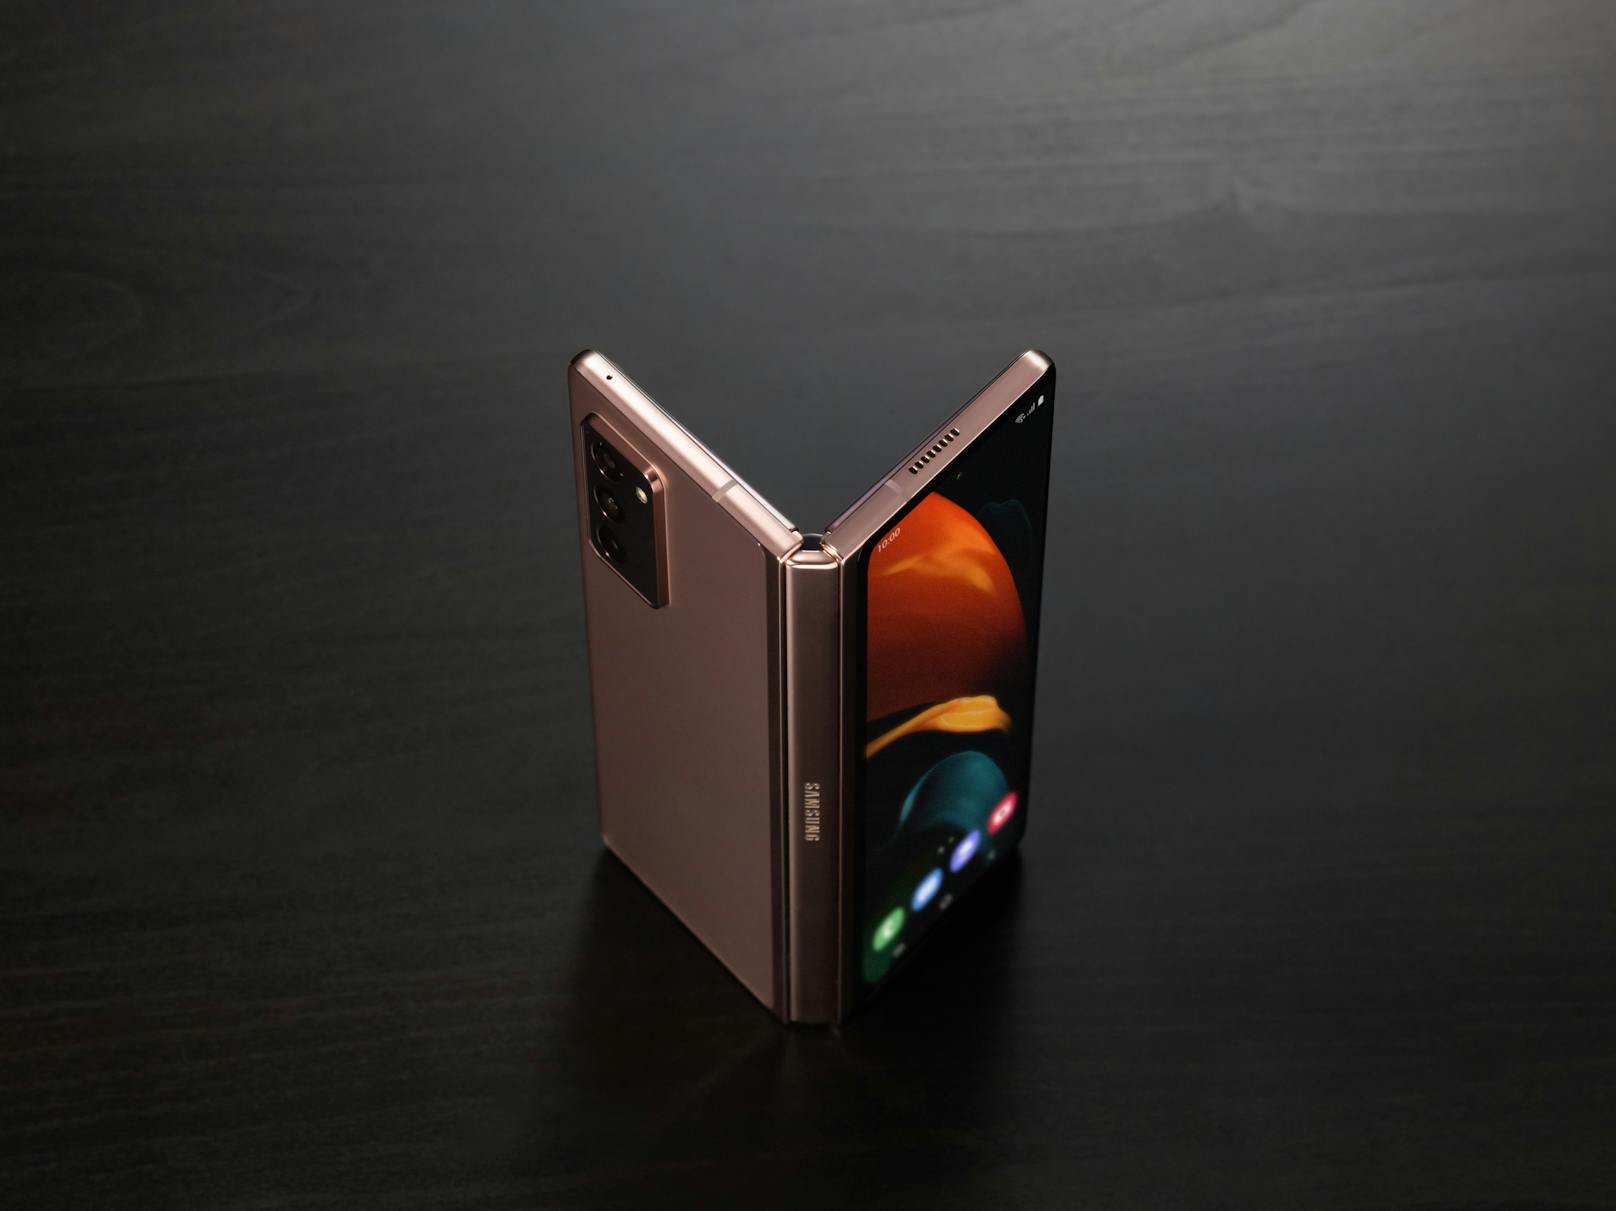 Samsung hat mit dem Galaxy Z Fold2 5G sein neuestes Foldable vorgestellt. Das Smartphone soll ein fast randloses Frontdisplay mit einem großen Hauptdisplay kombinieren.